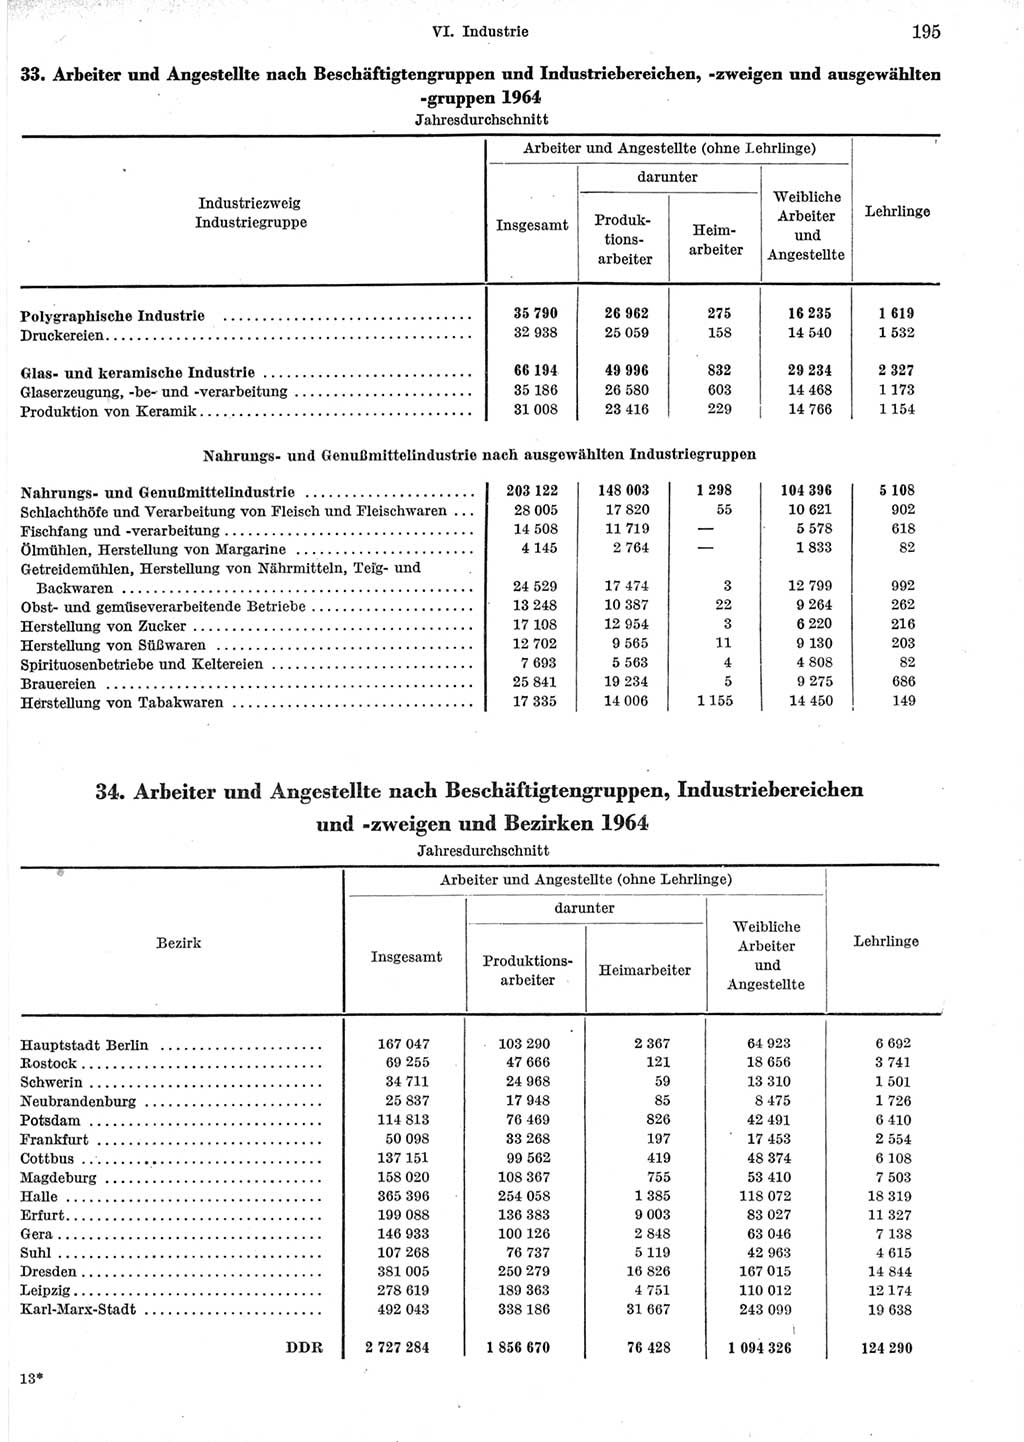 Statistisches Jahrbuch der Deutschen Demokratischen Republik (DDR) 1965, Seite 195 (Stat. Jb. DDR 1965, S. 195)